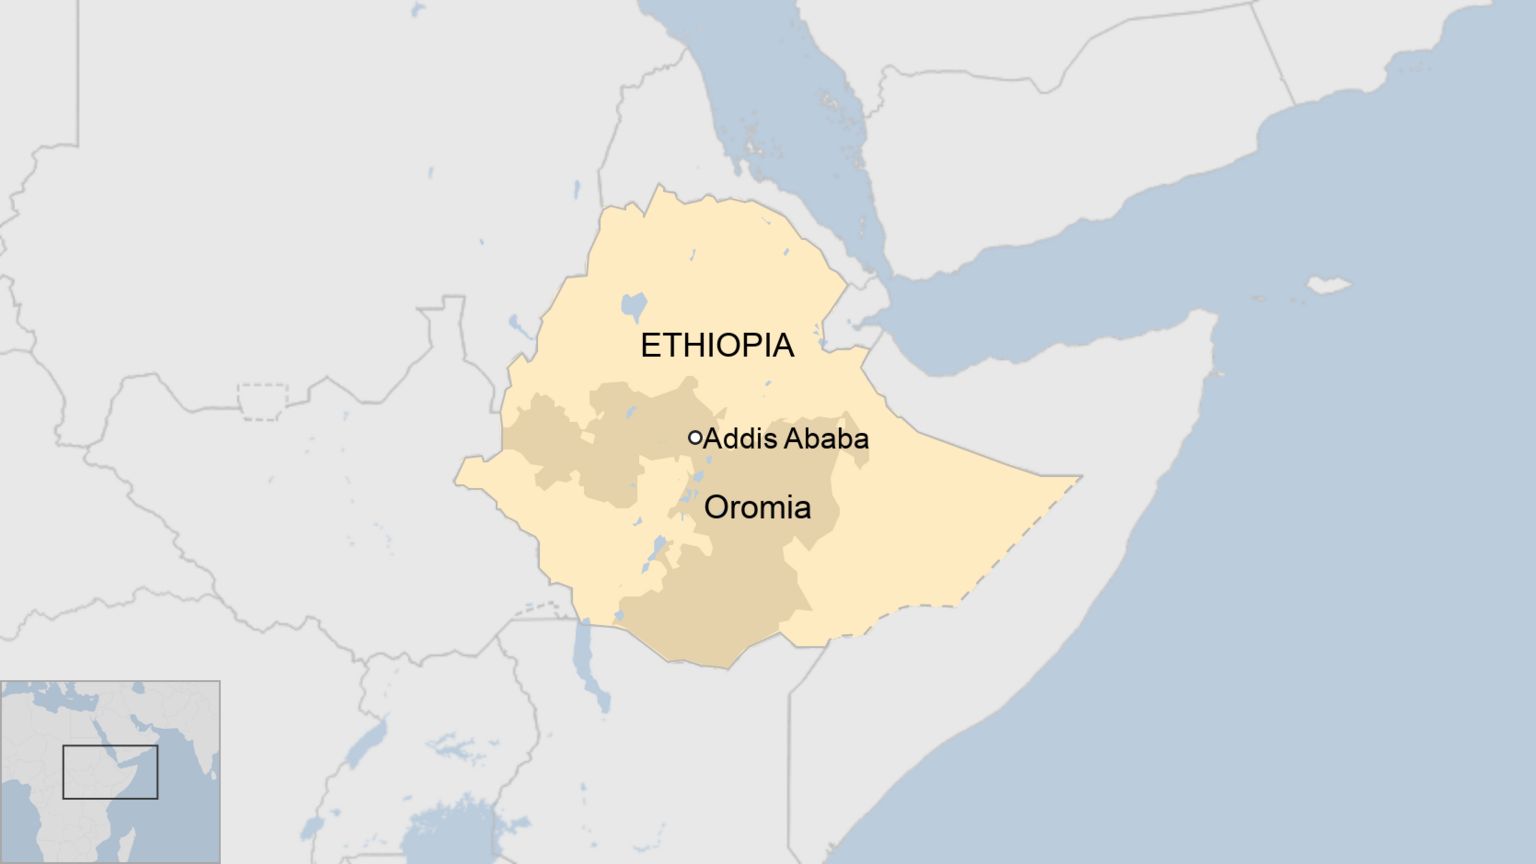 Map of Ethiopia, showing Oromia